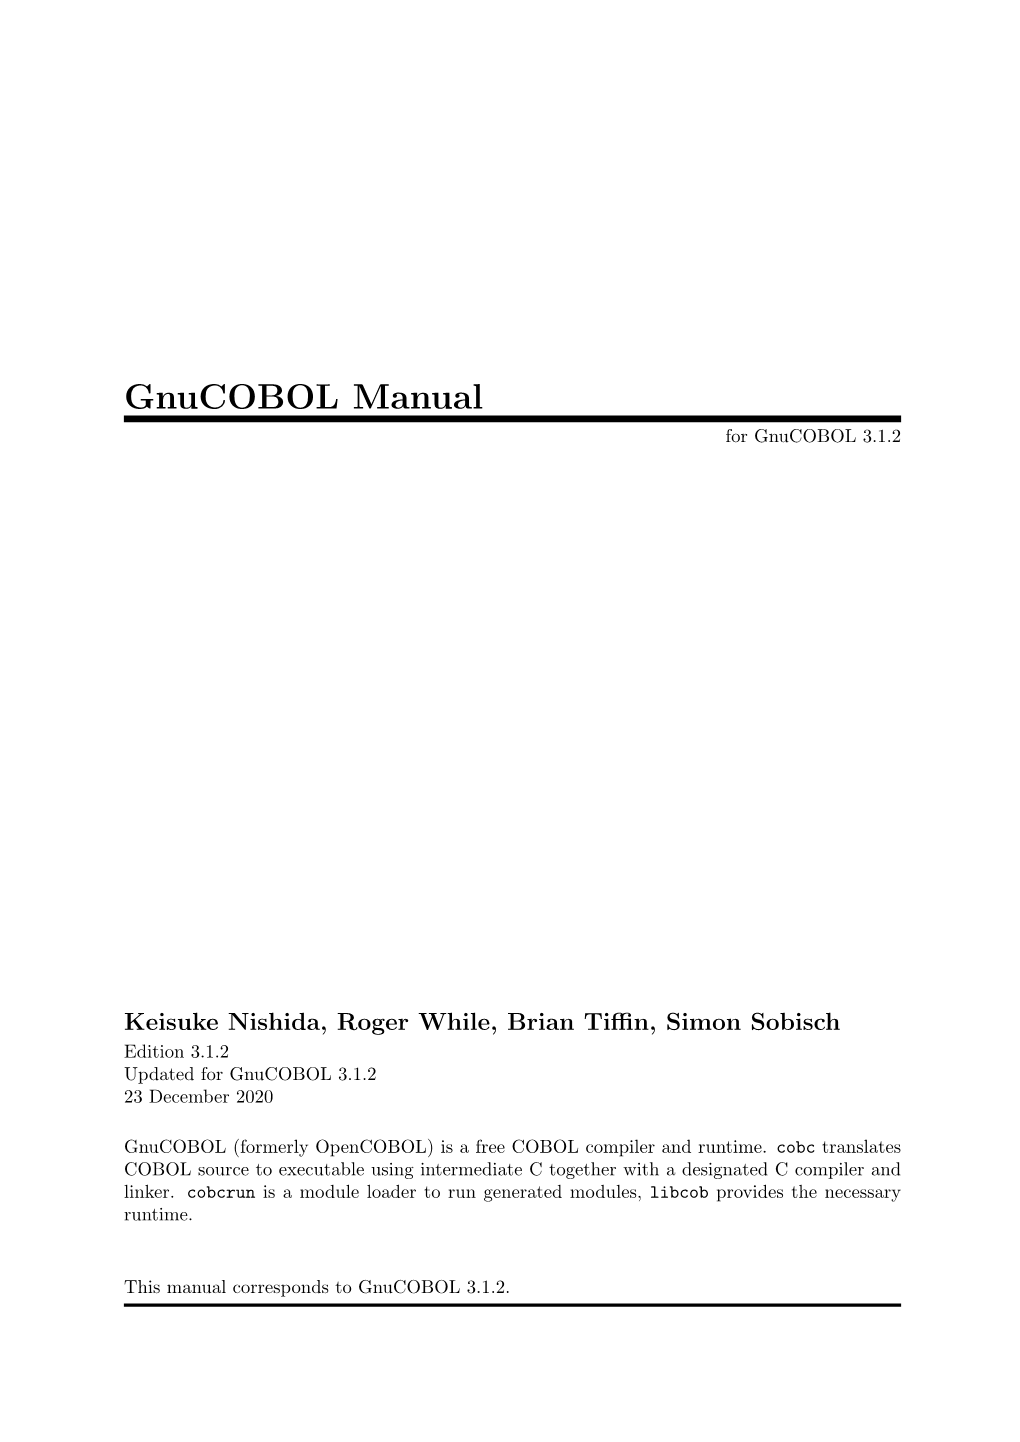 Gnucobol Manual for Gnucobol 3.1.2